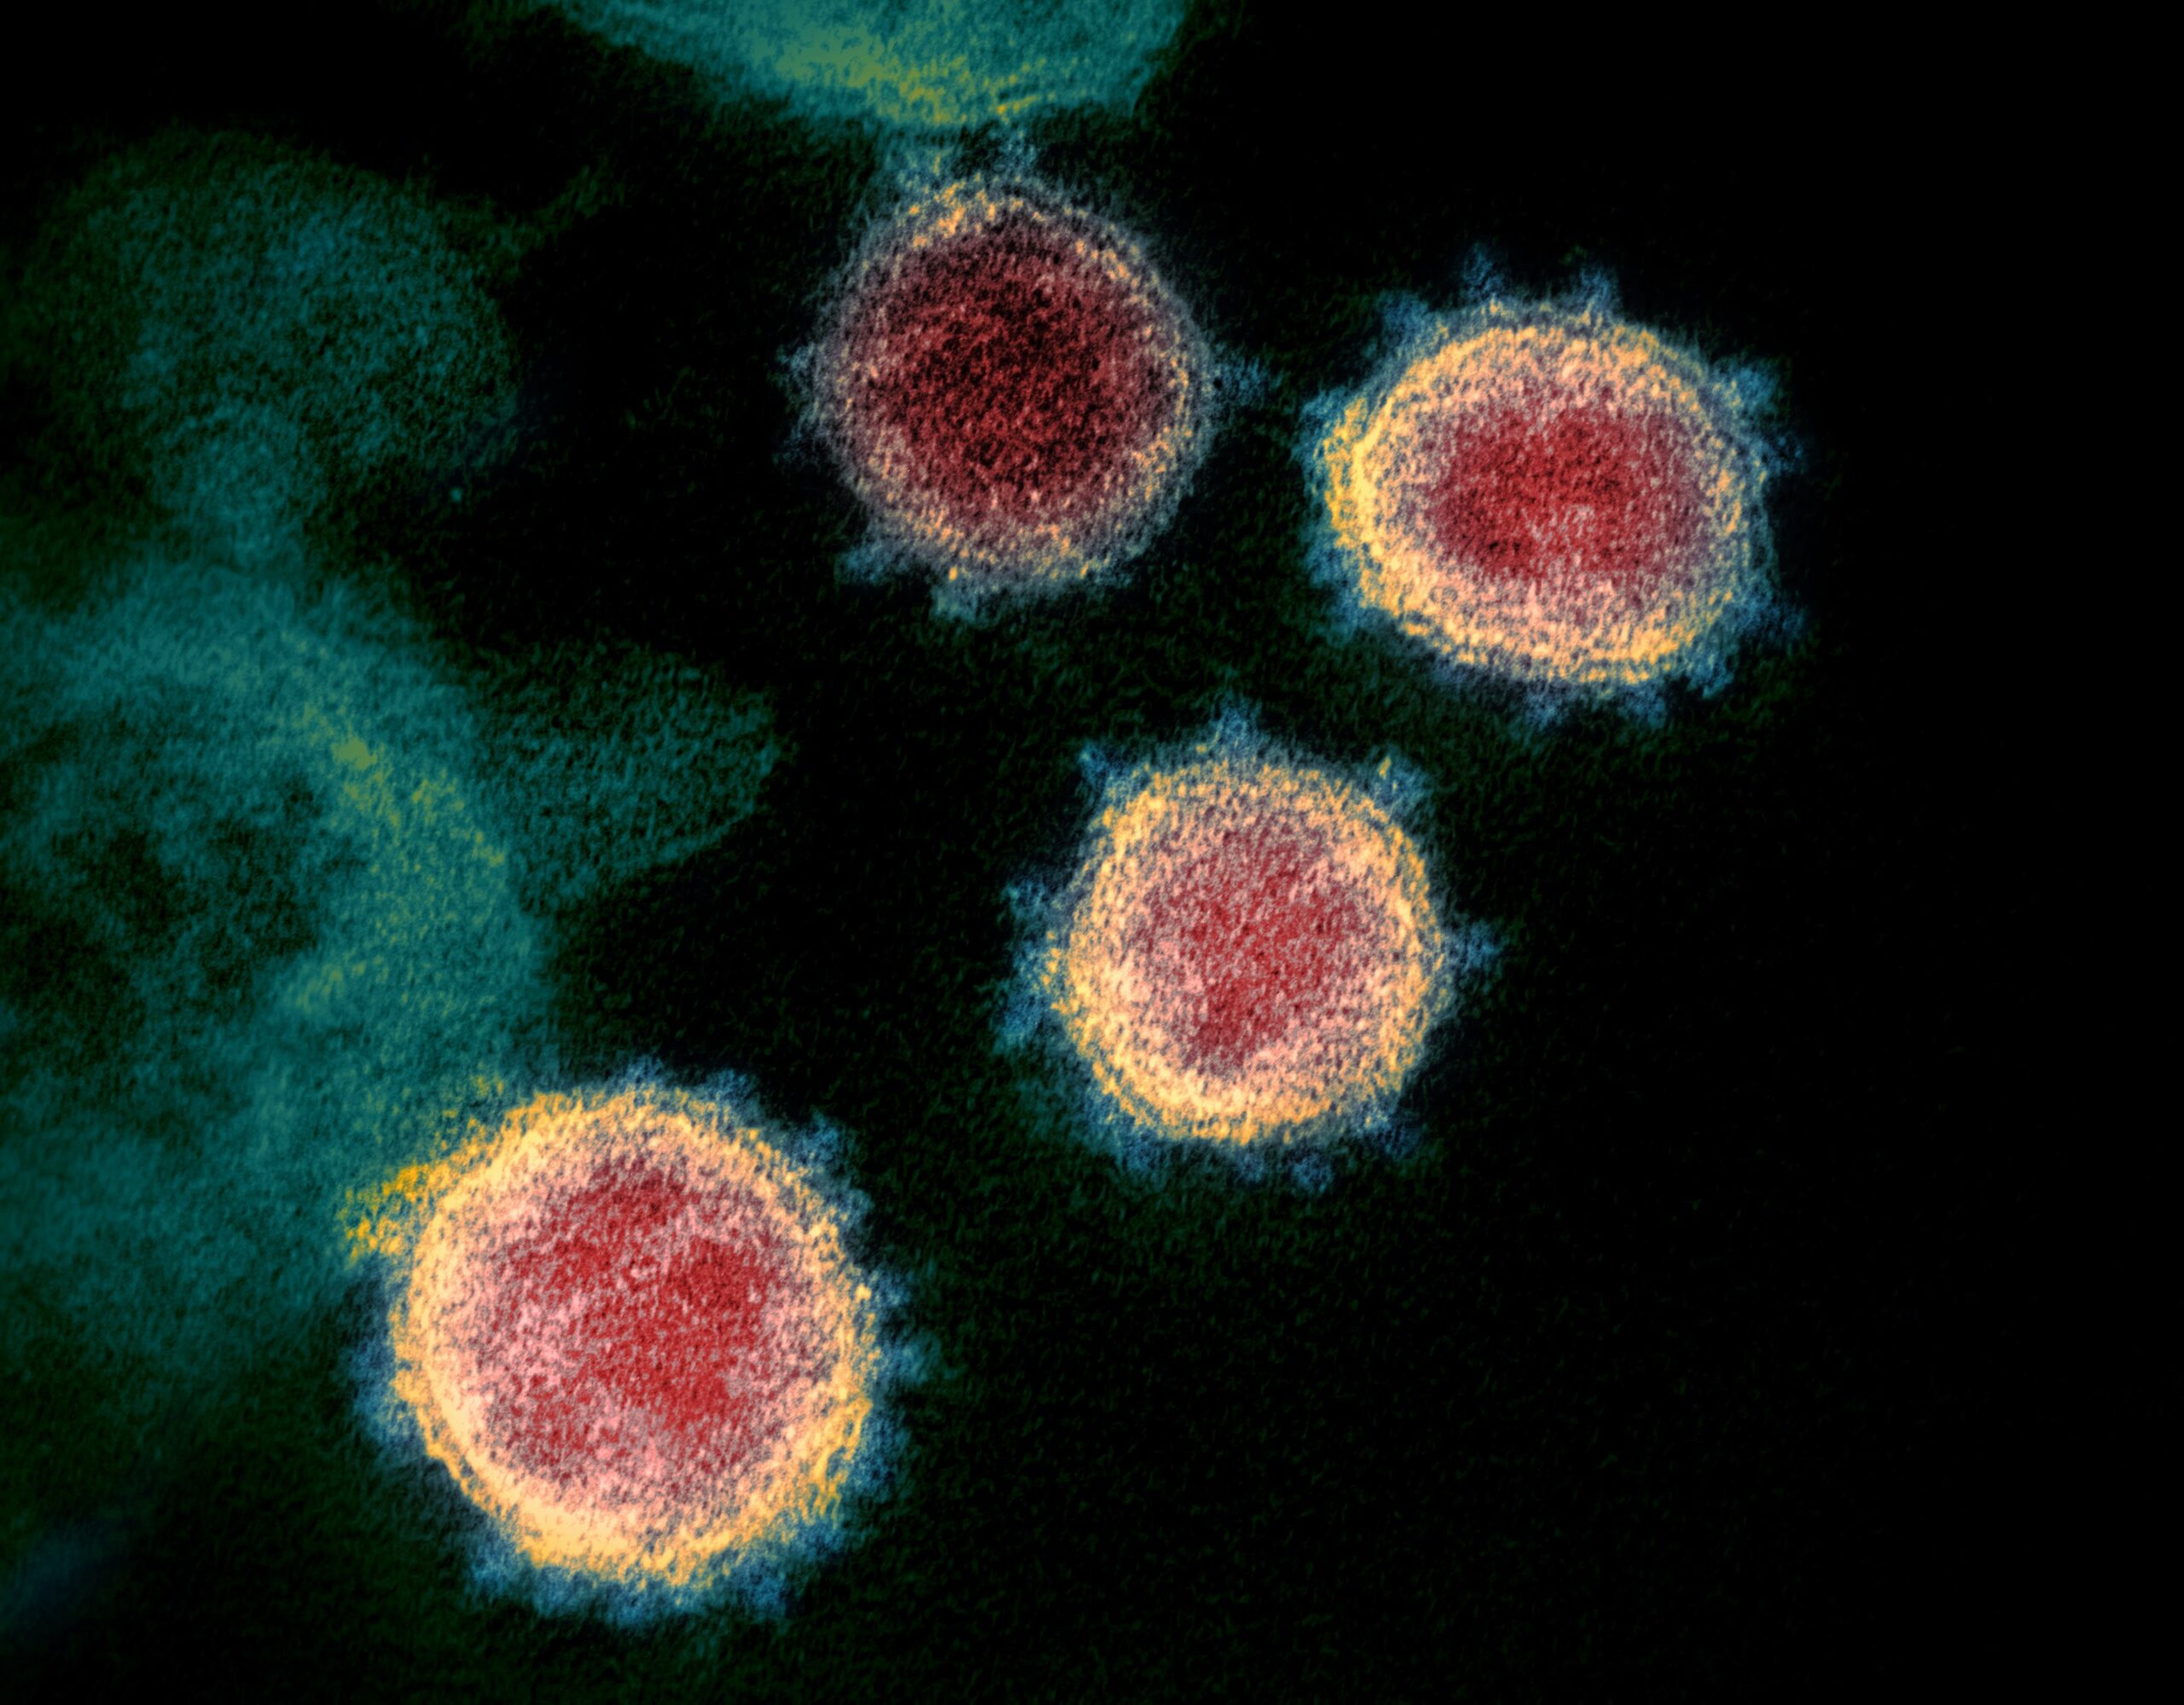 新冠病毒在穿透式電子顯微鏡下現形，可見病毒表現突起的棘冠。因新冠病毒是 RNA 病毒，突變速度快。中研院團隊將目前新冠病毒變異分為六大類型，目前全球流傳的幾乎都是第六類型病毒，未來團隊將持續追蹤病毒變異。圖│維基百科